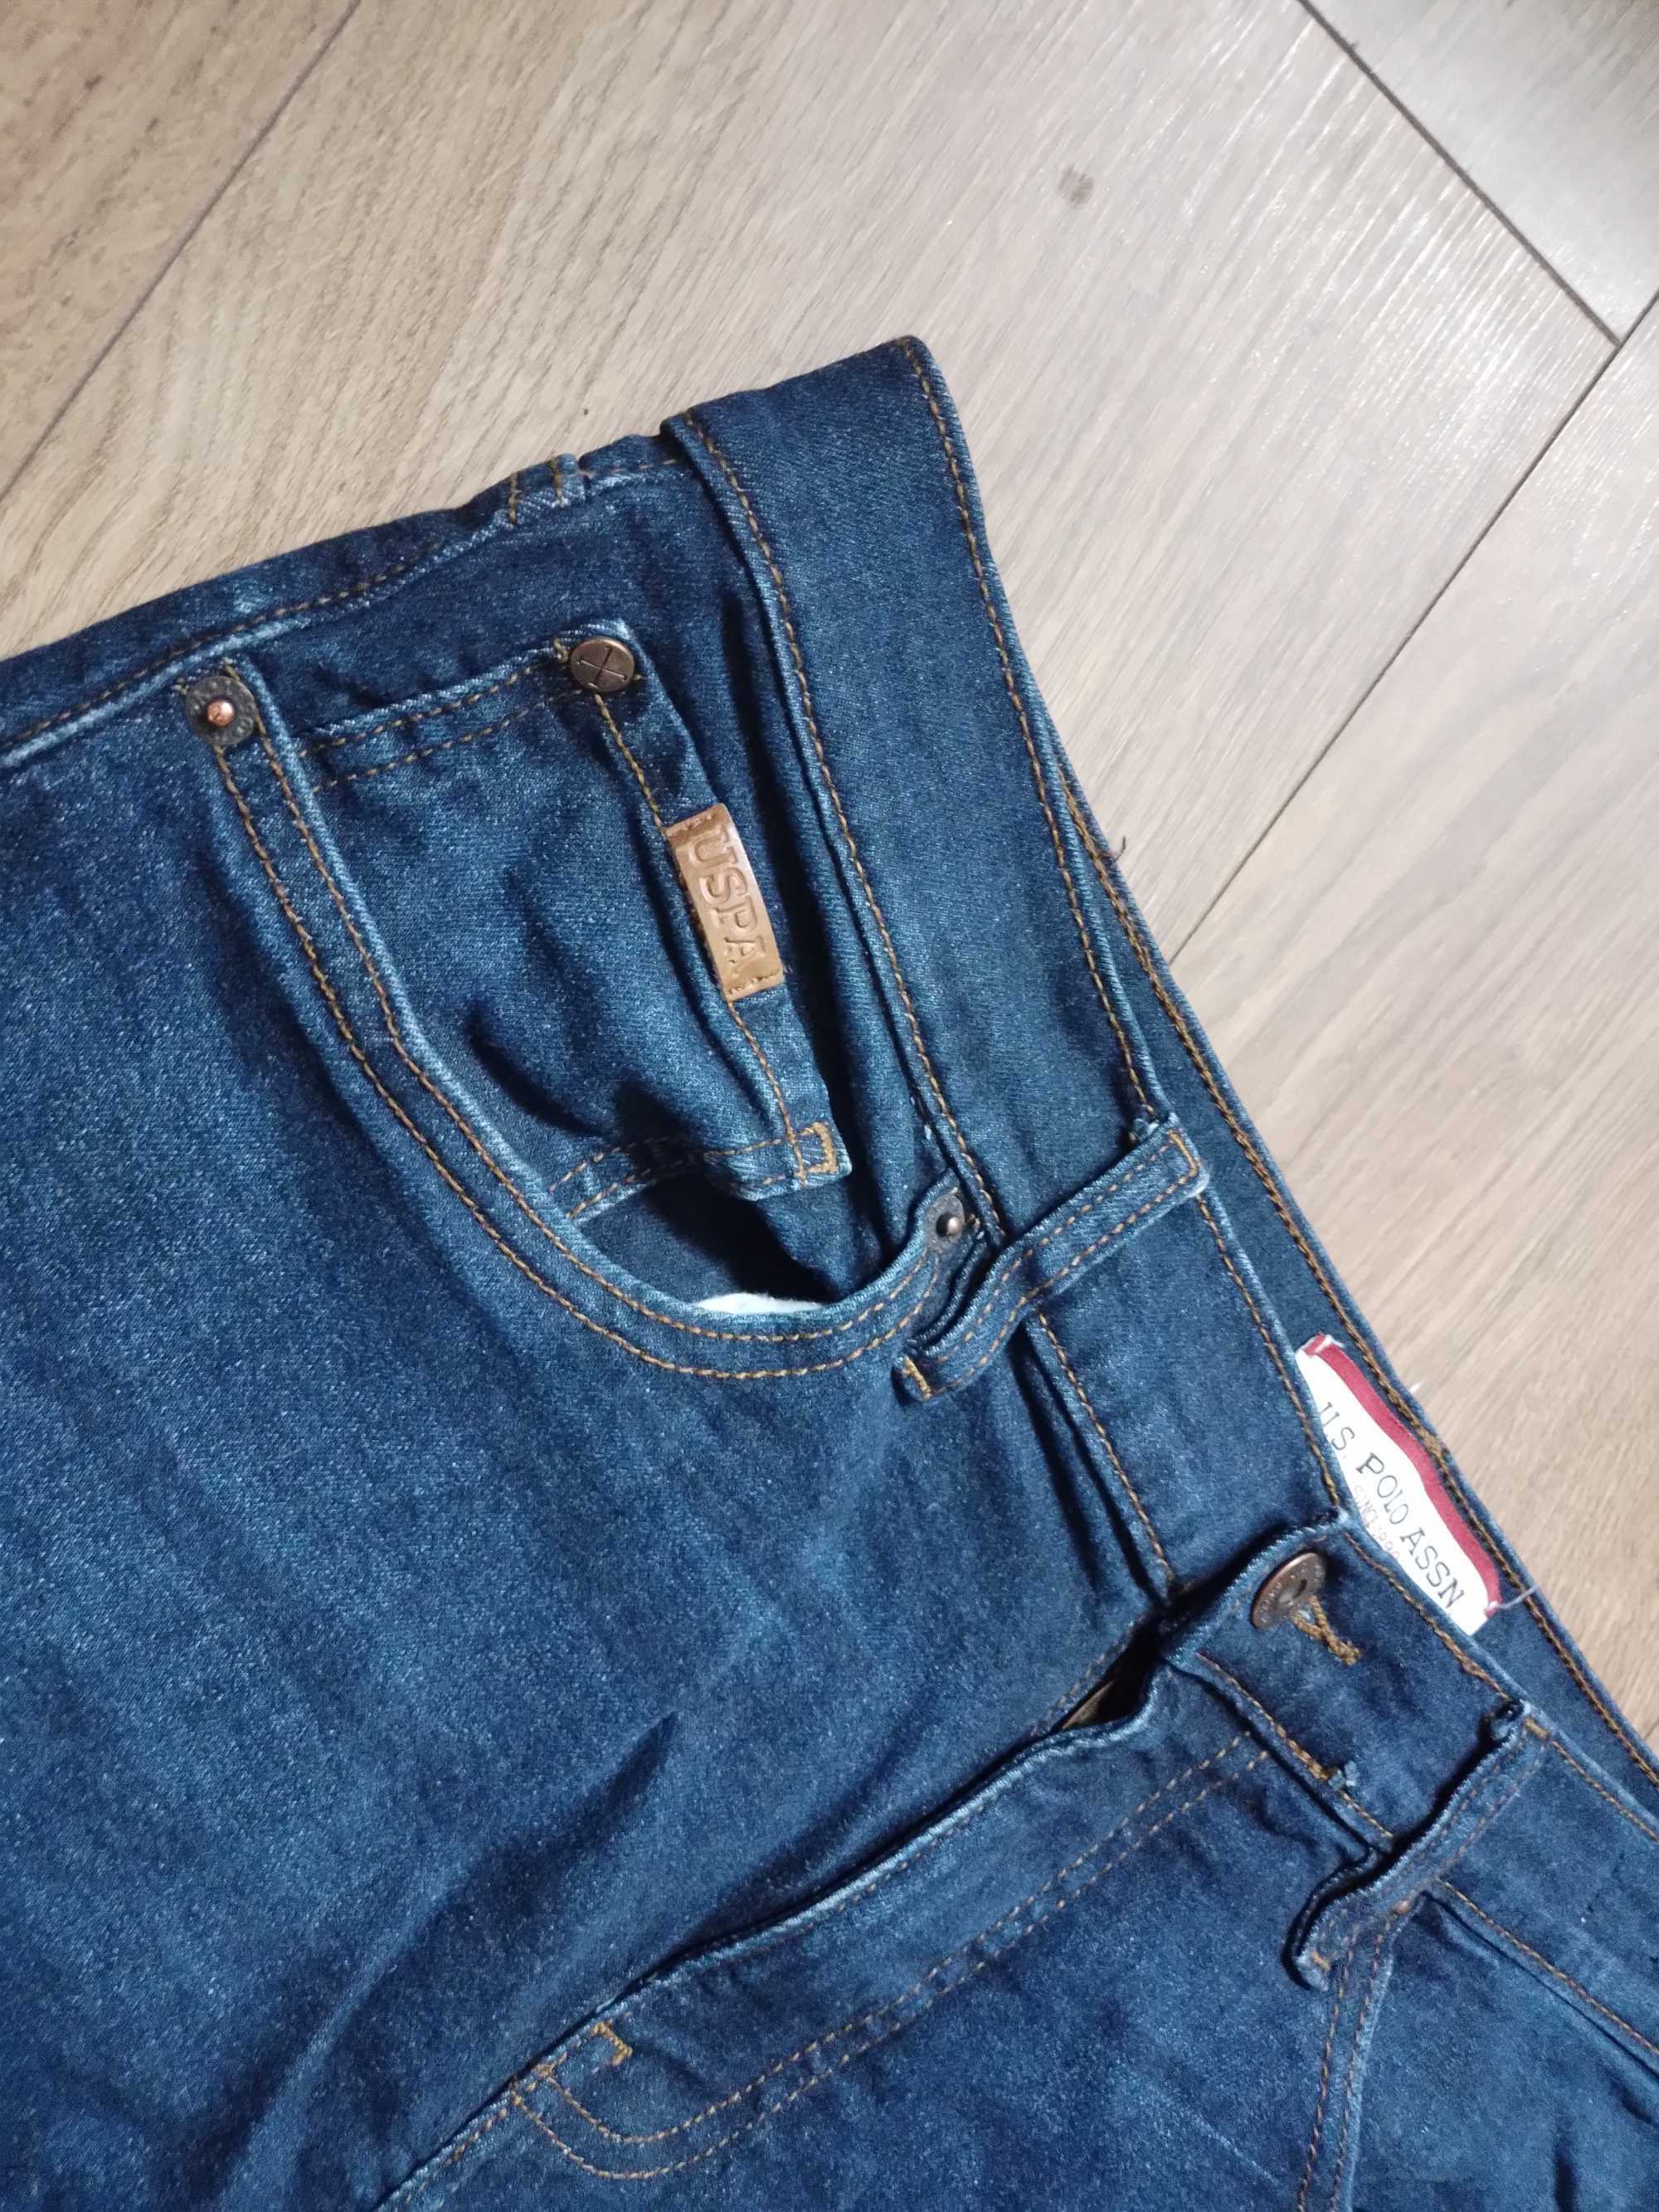 Spodnie meskie jeans u.s. polo assn 34